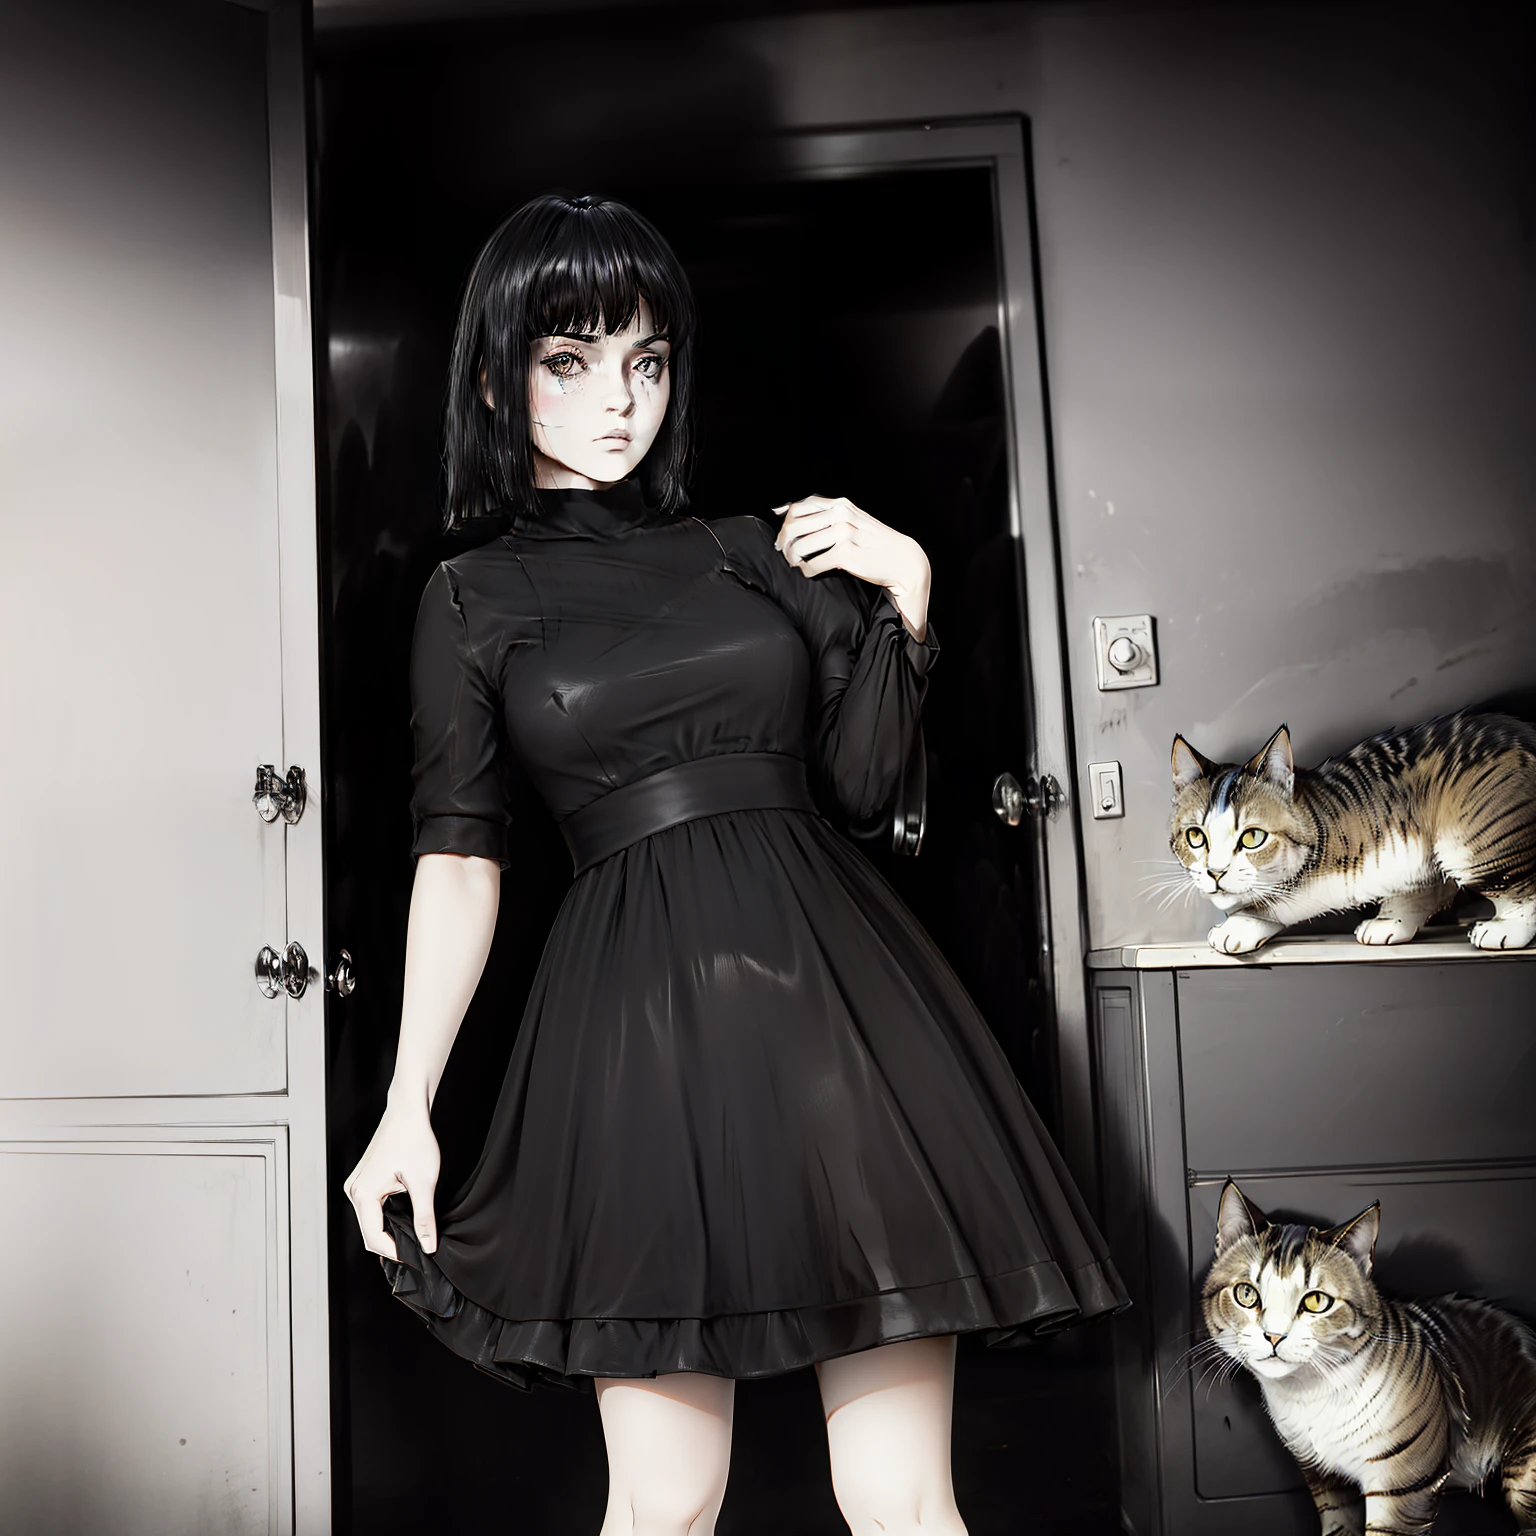 Cabelo trancado preto com fita vermelha, pele branca, olhos cinza claro, vestido preto, segurando um boneco rasgado de um gato